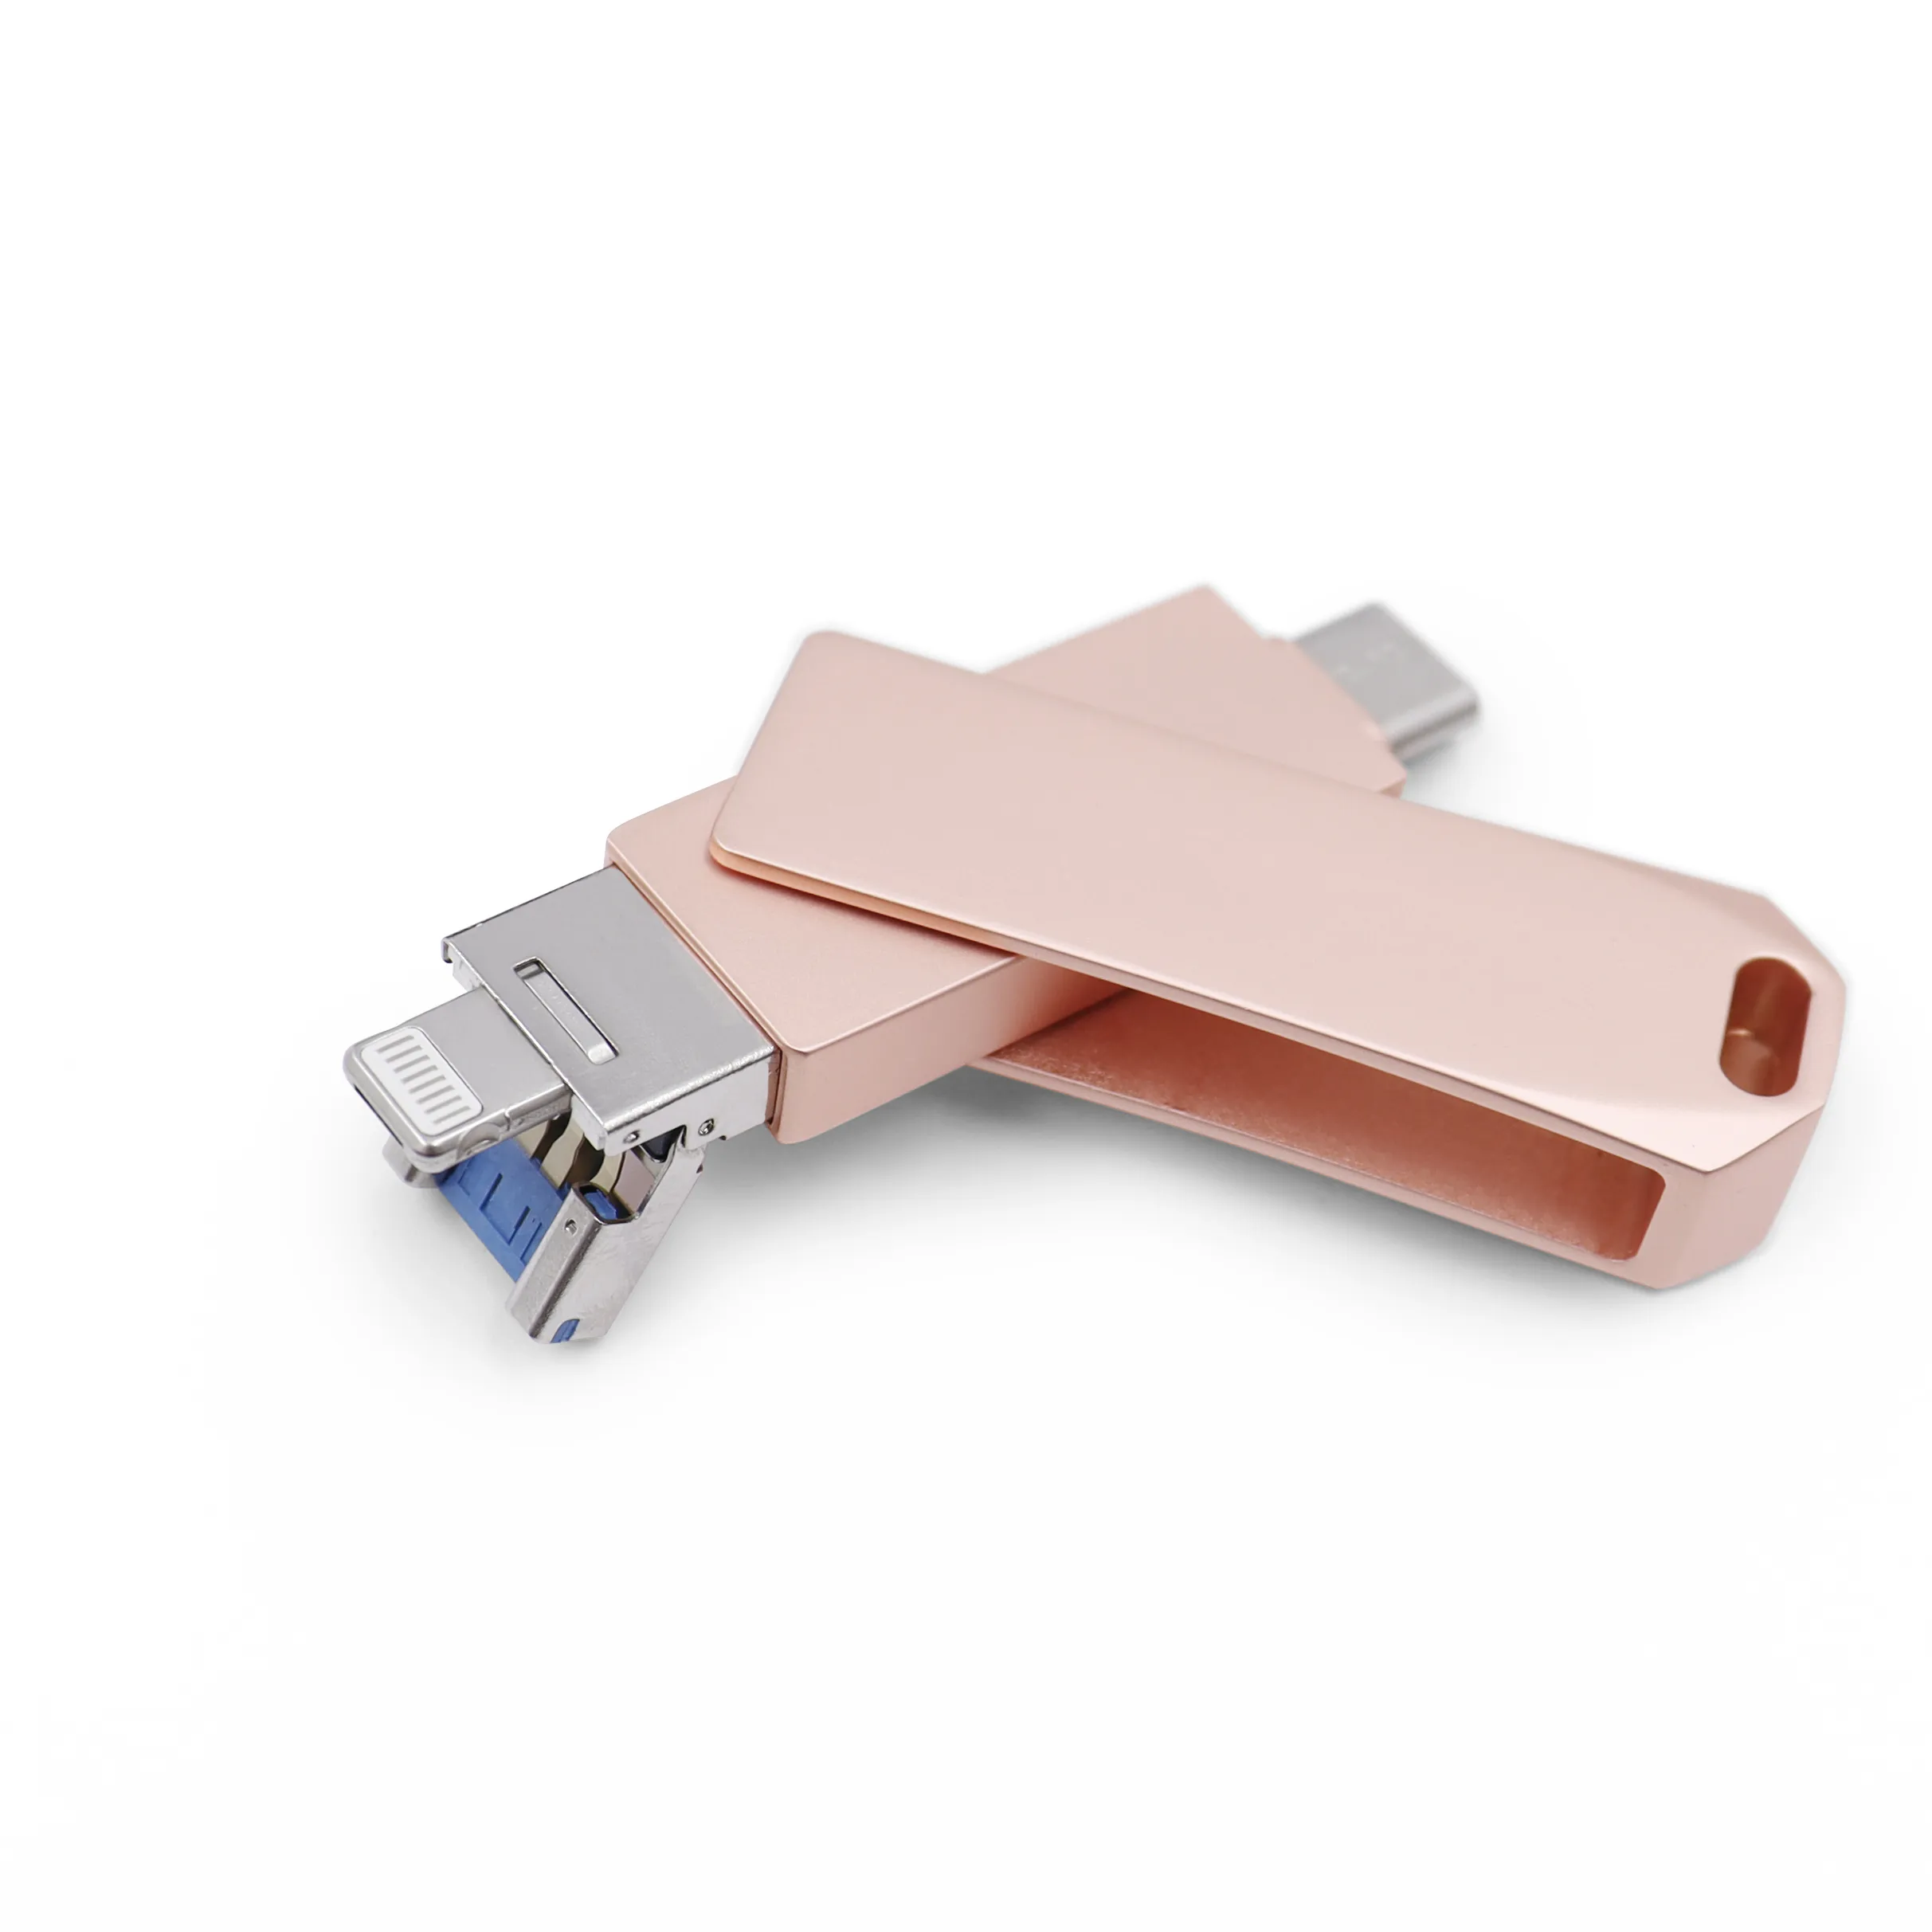 Chiavette USB regalo 3 in 1 unità Flash USB OTG per iPhone Computer Android 2.0 3.0 Pen Drive